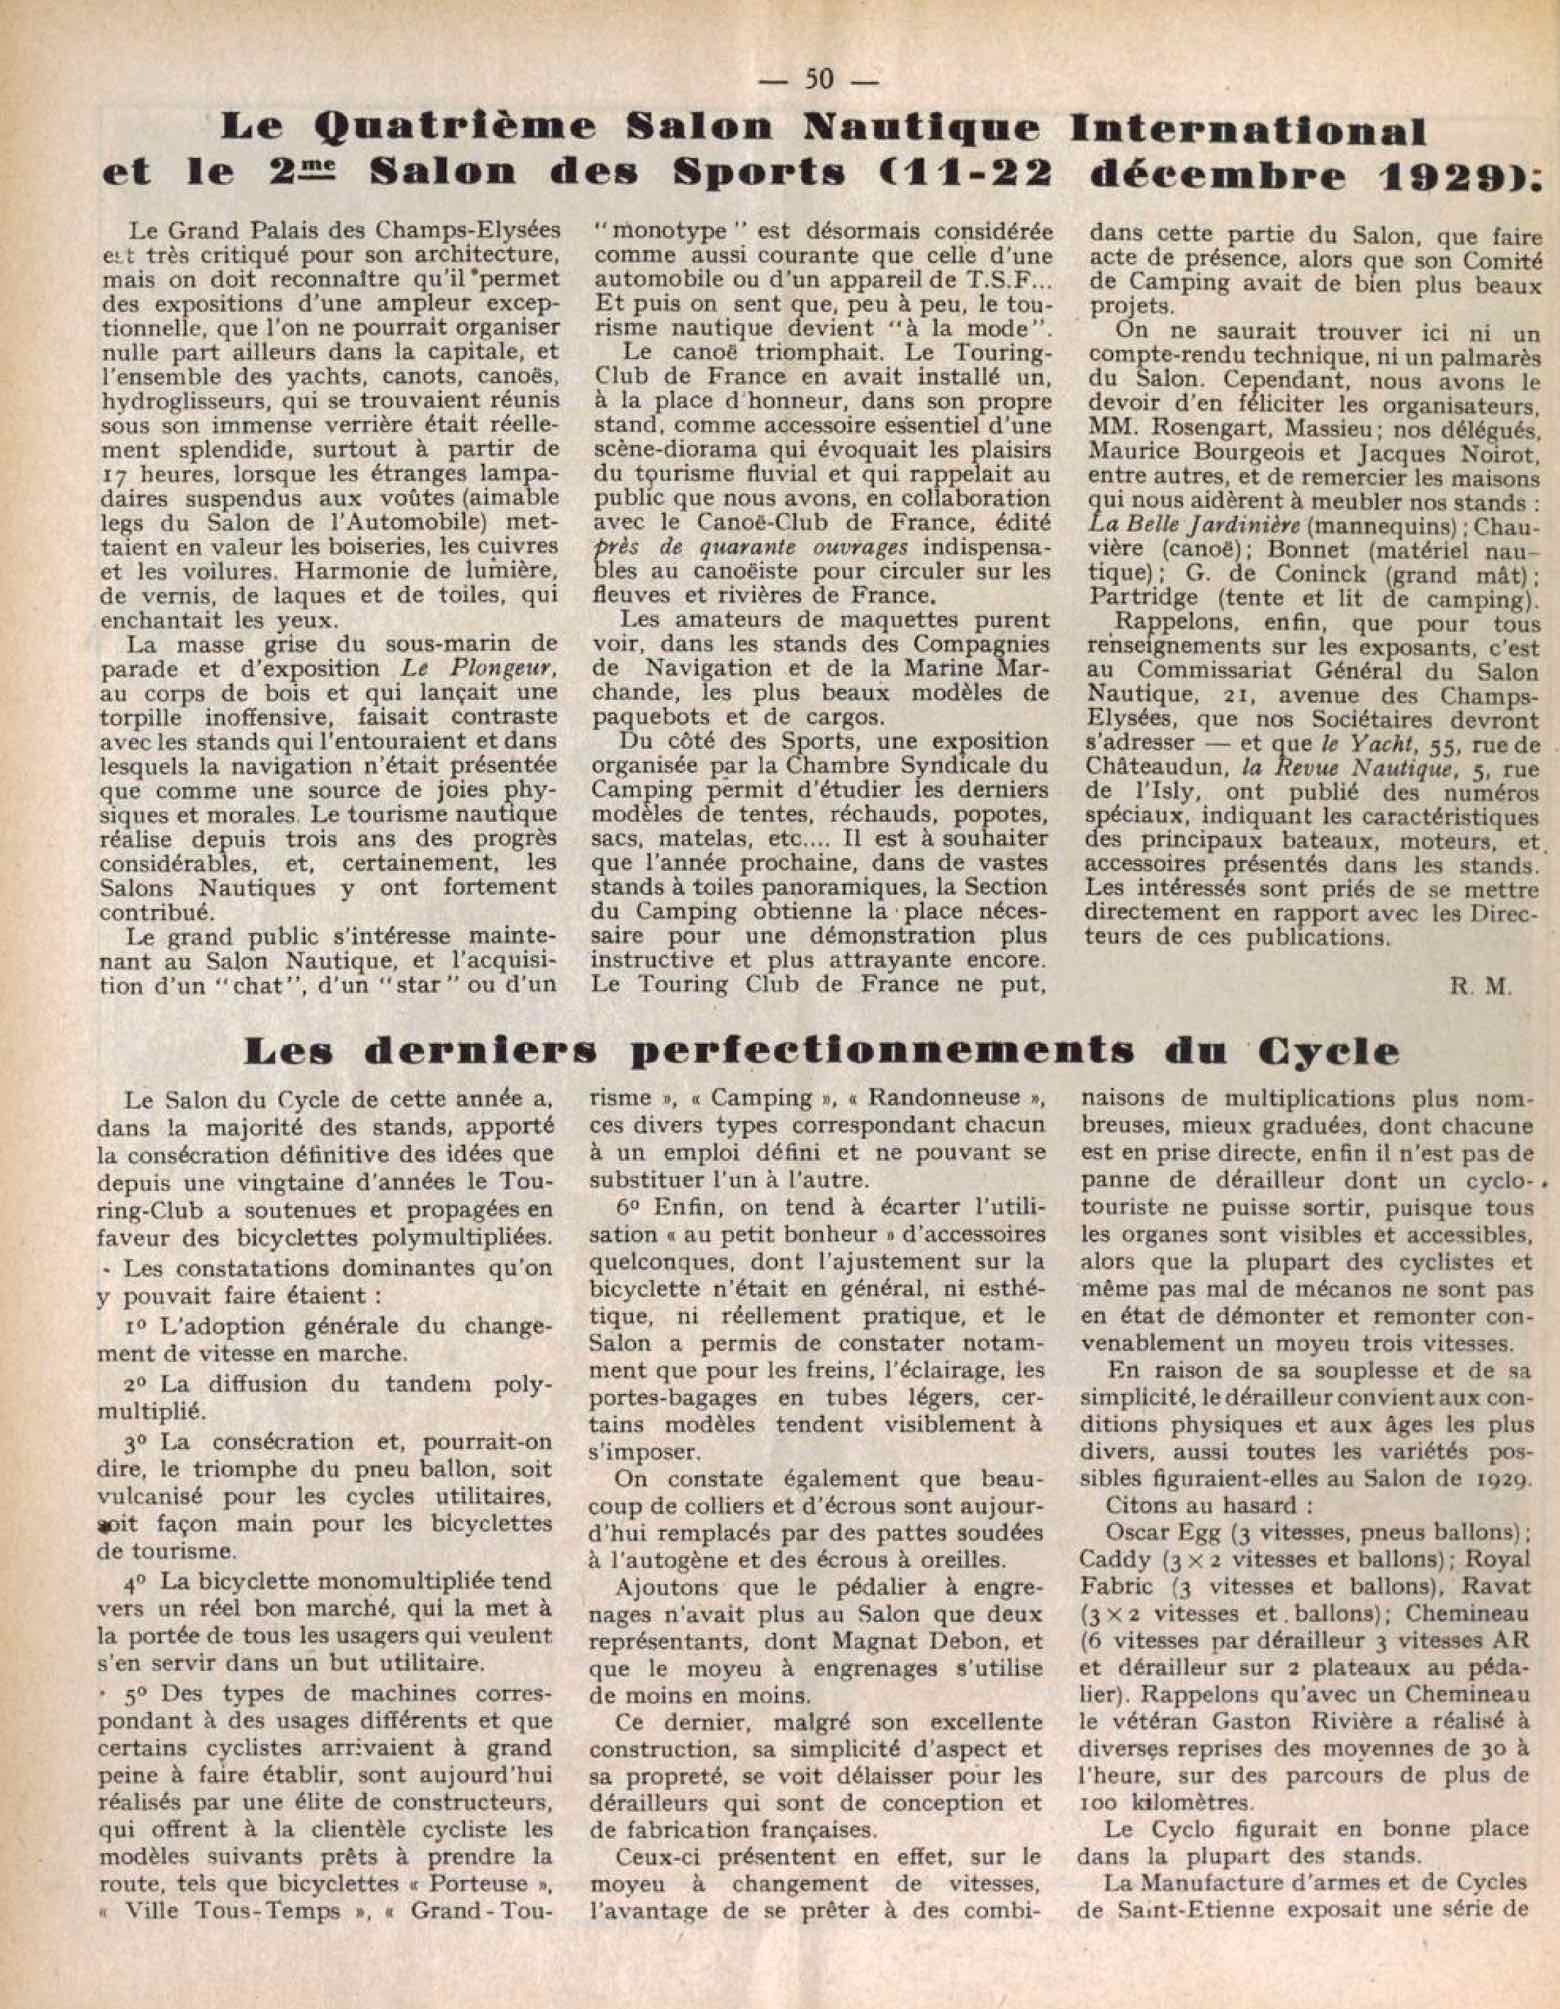 T.C.F. Revue Mensuelle February 1930 - Les derniers perfectionnements du Cycle scan 1 main image